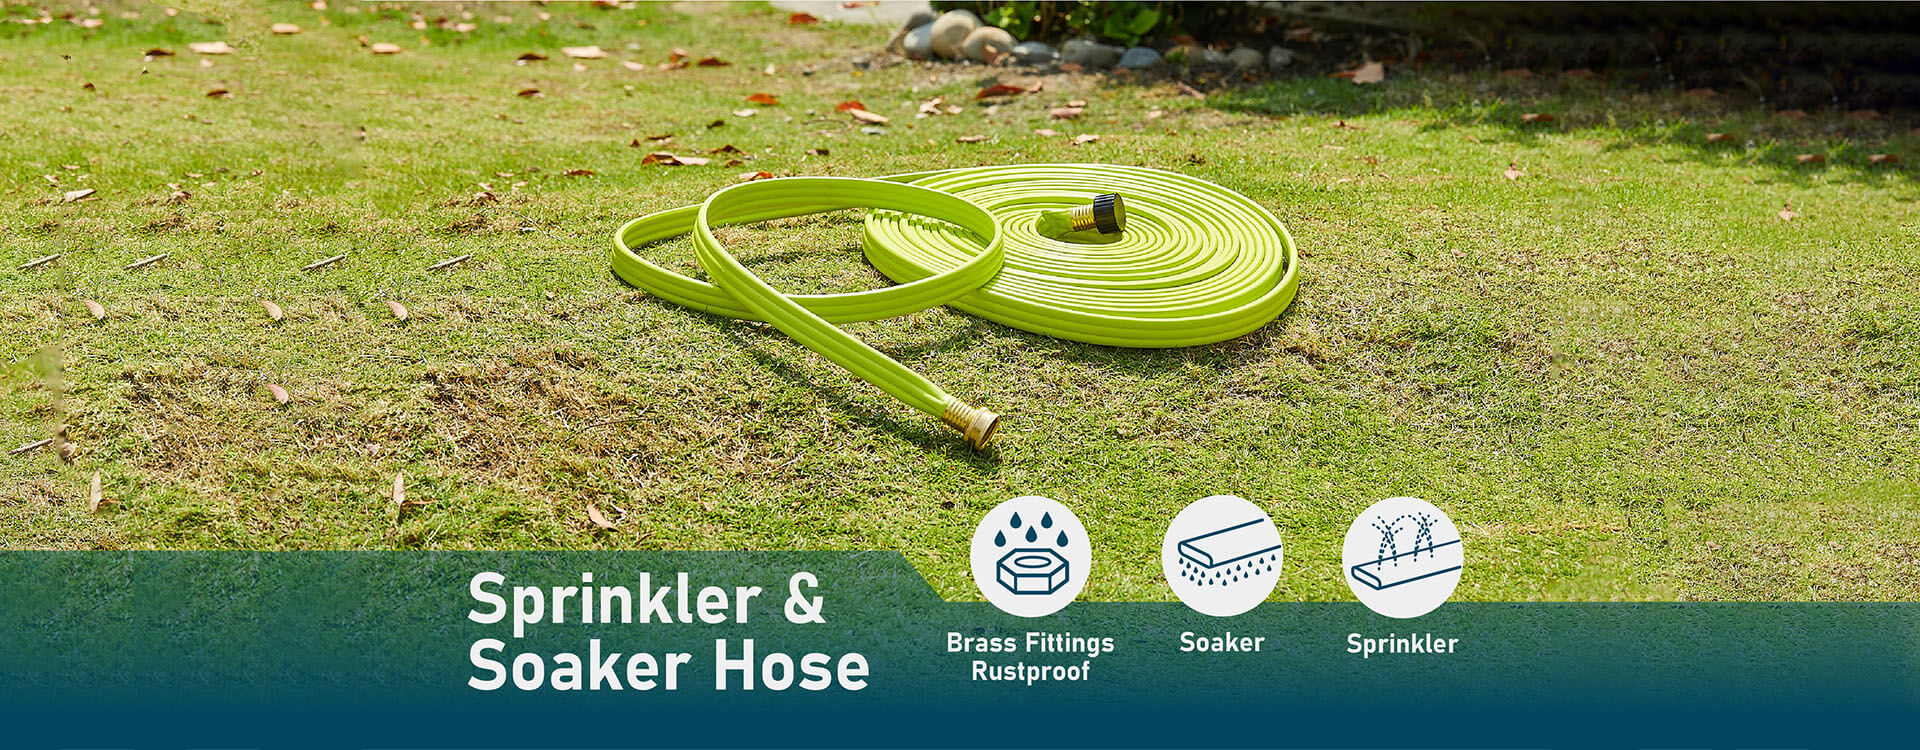 Paraden Sprinkler and soaker hose, your best hose recommended